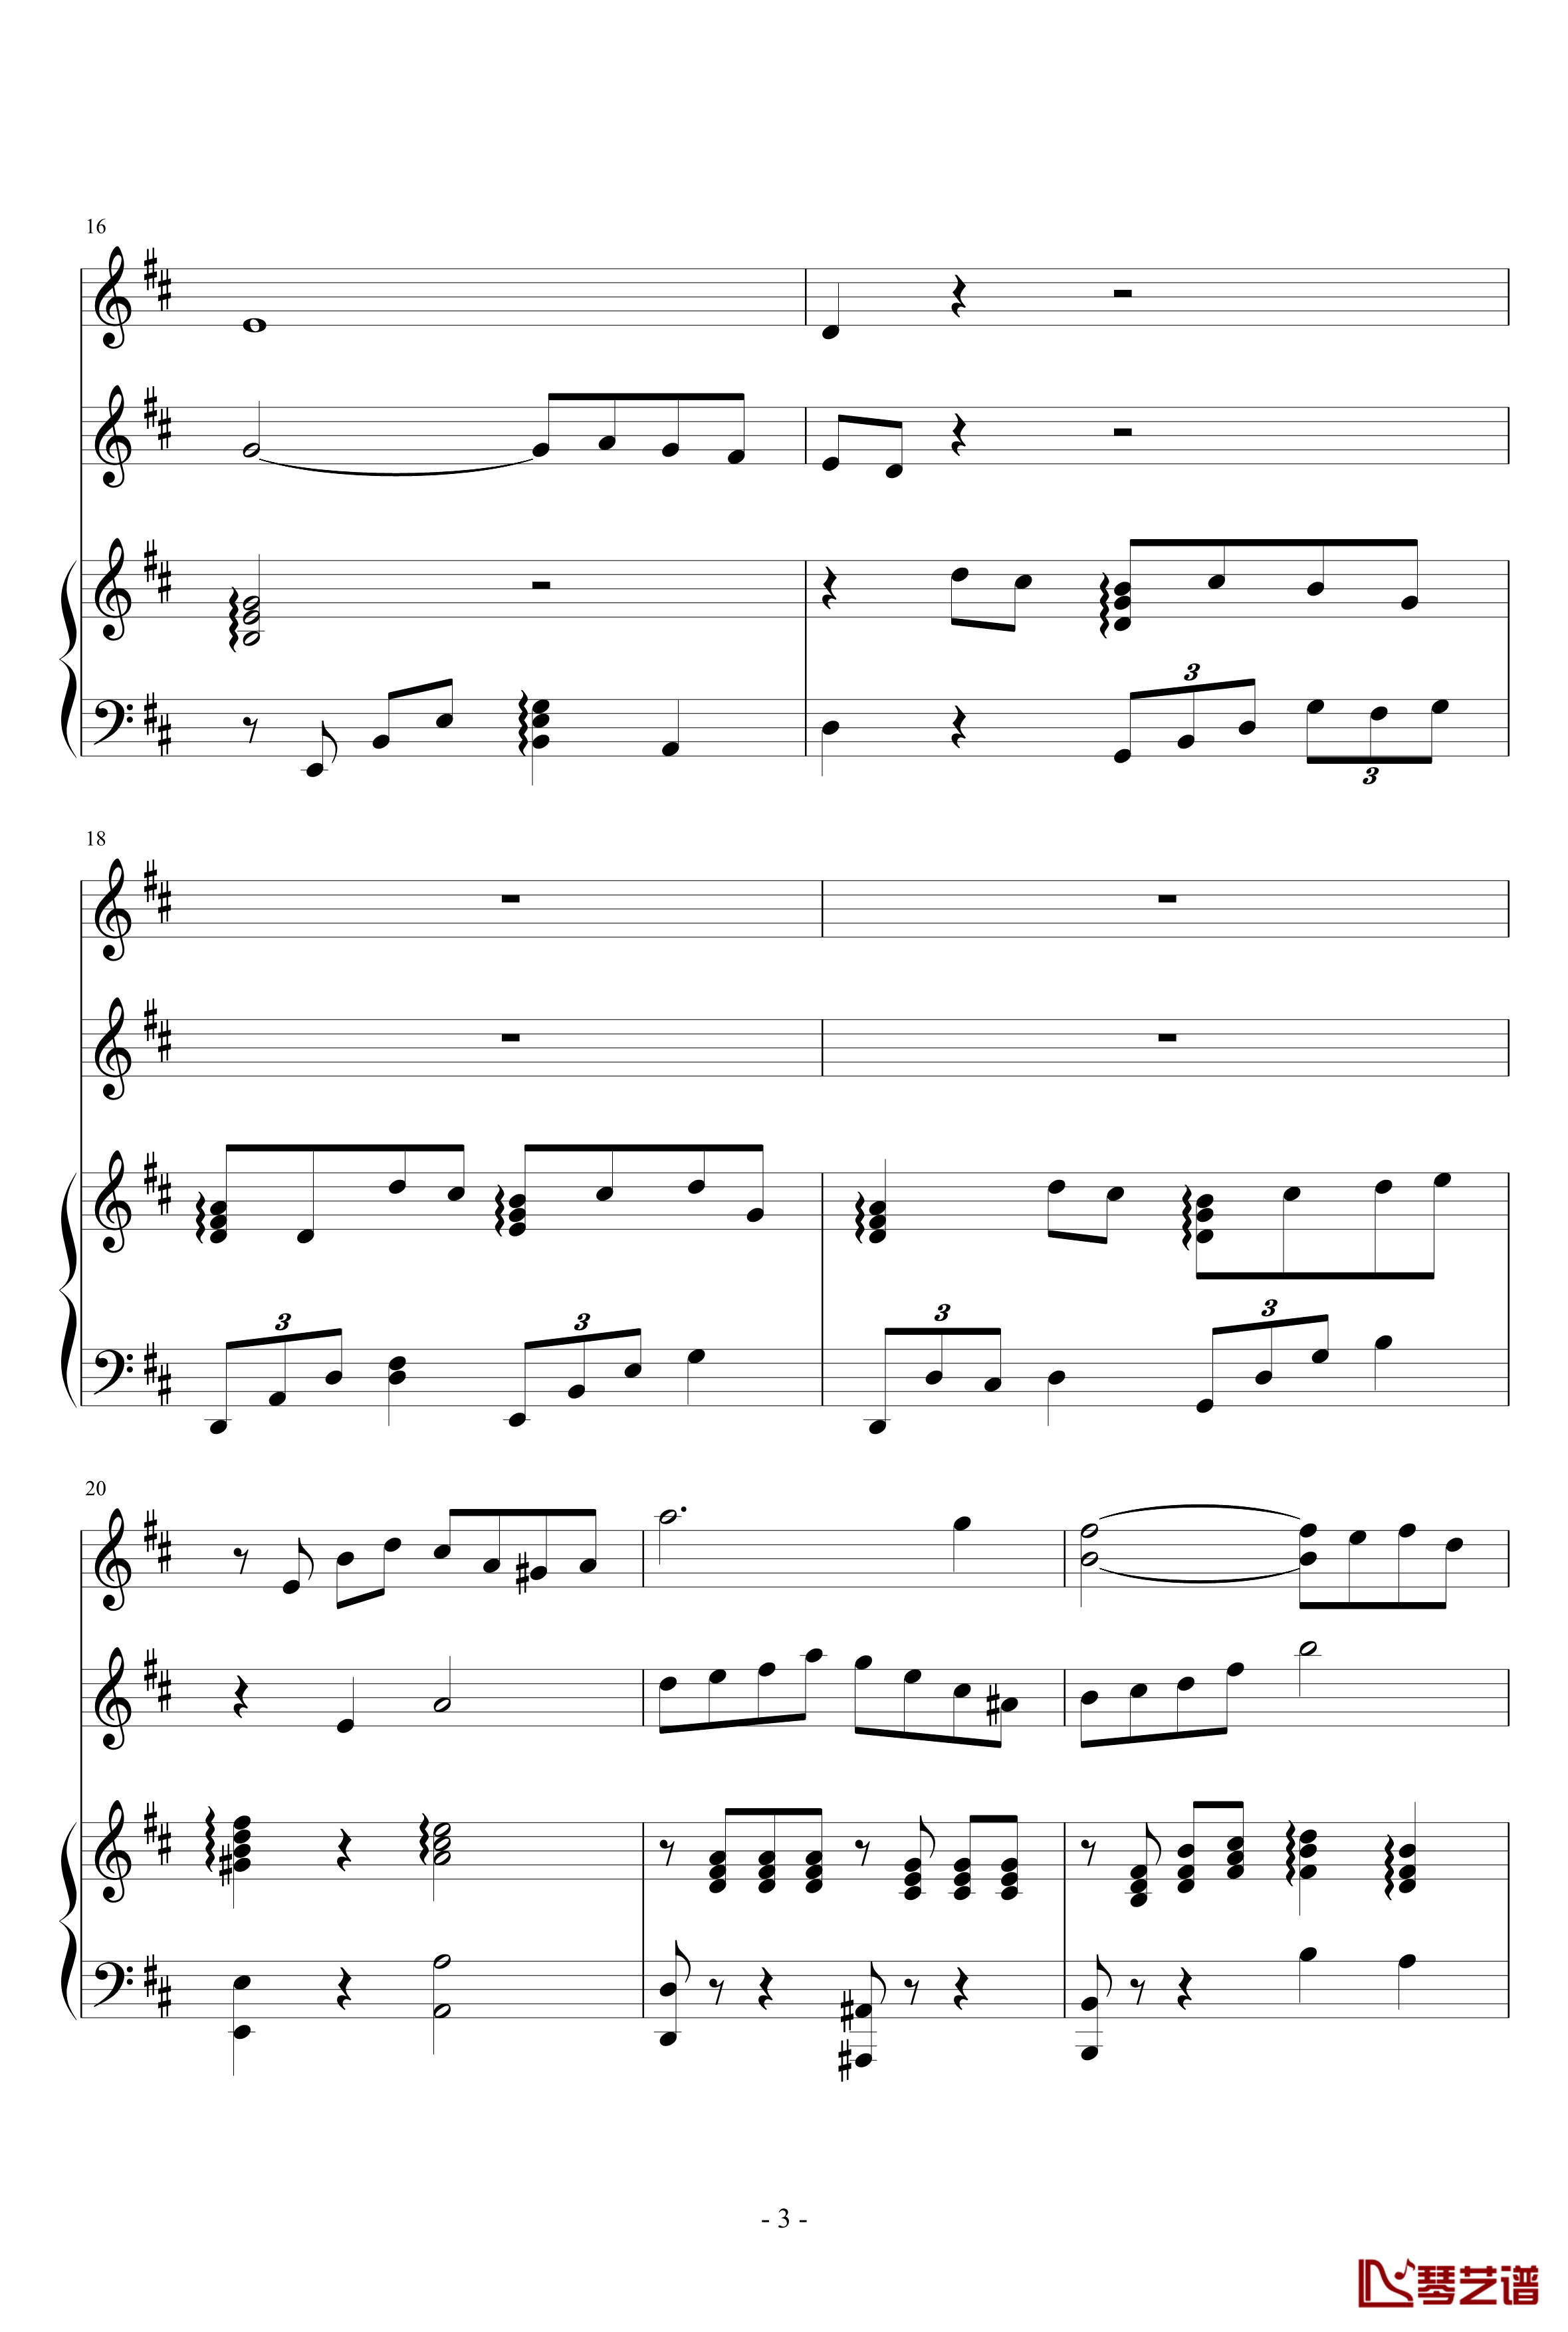 春之歌钢琴谱-nzh19343